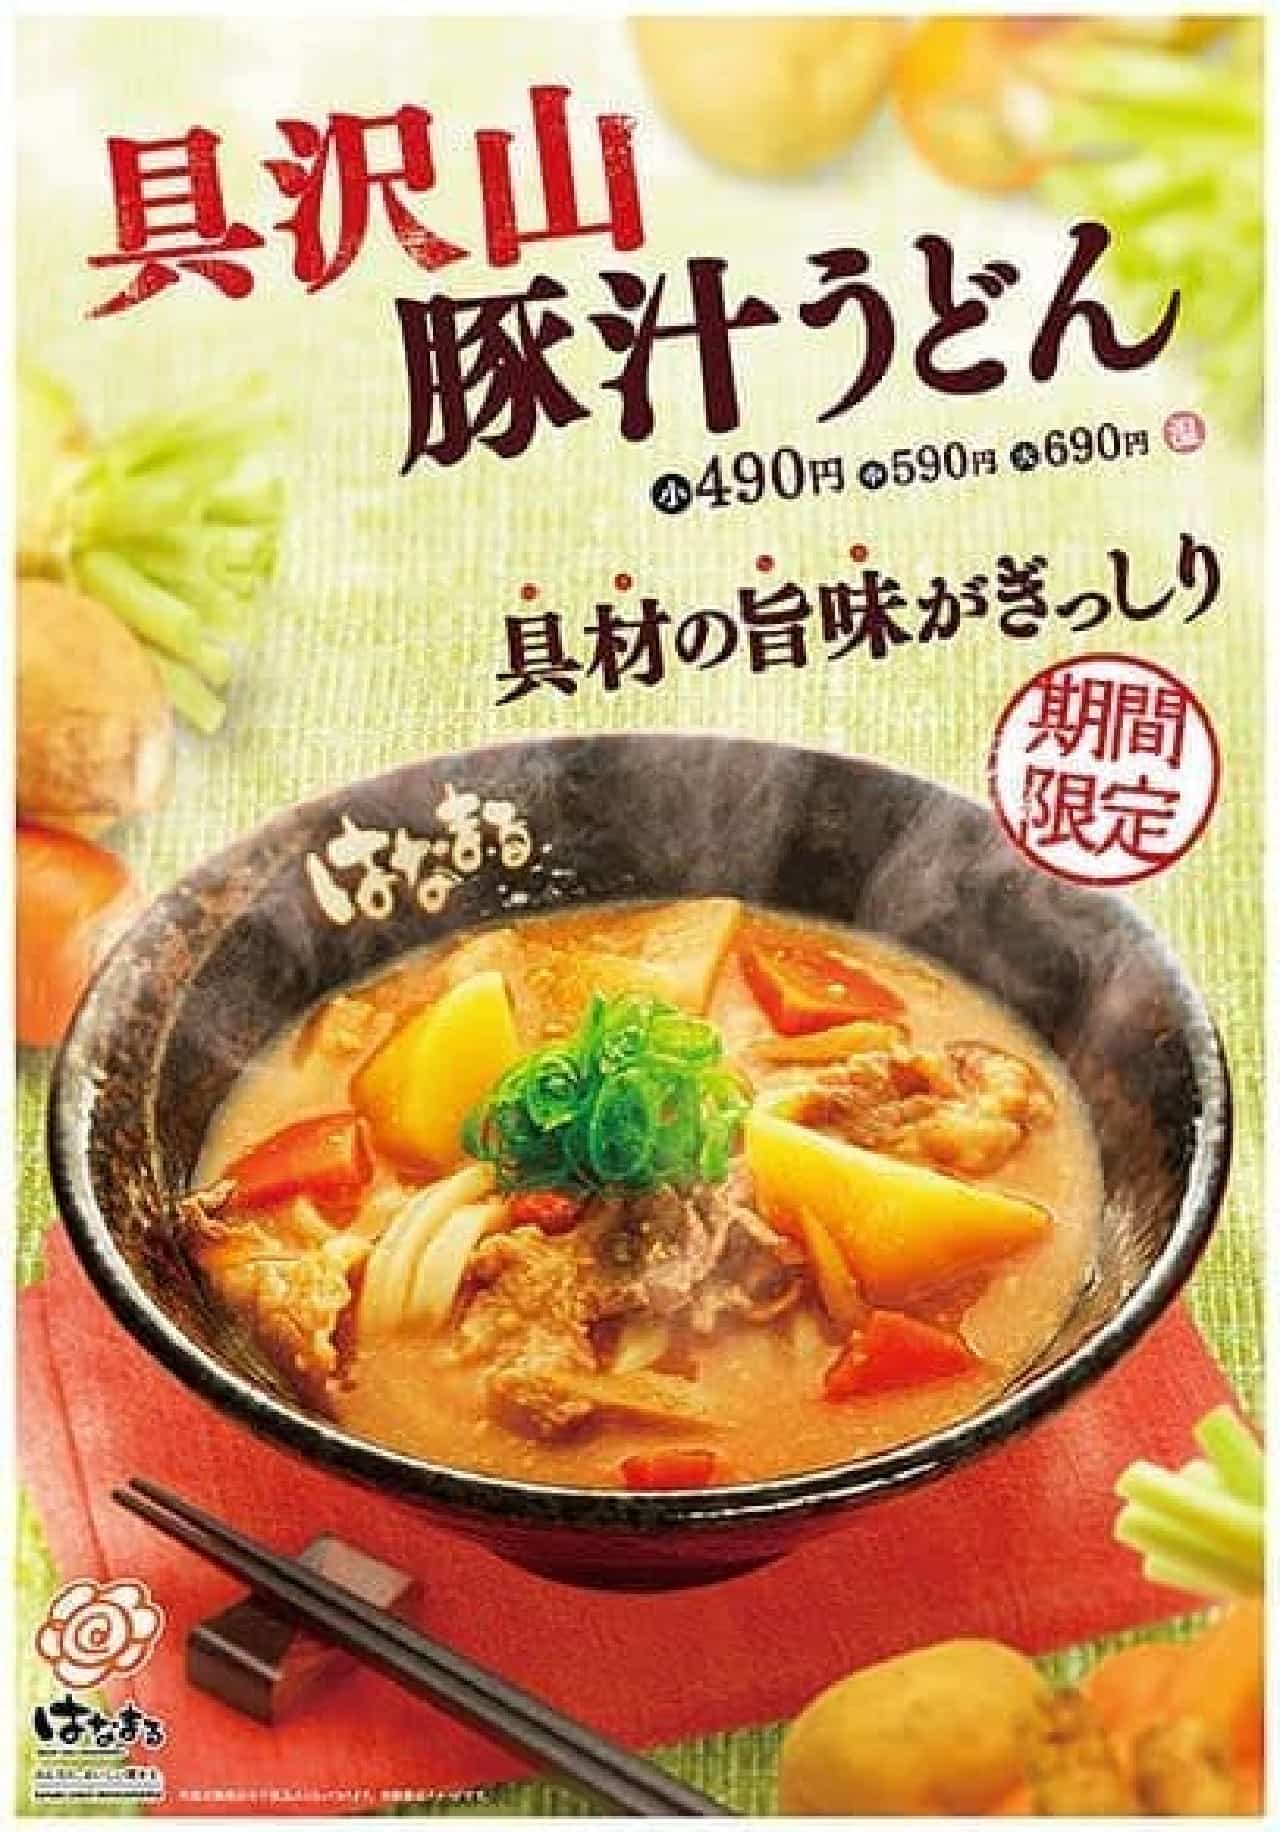 Hanamaru Udon "A lot of pork soup udon"